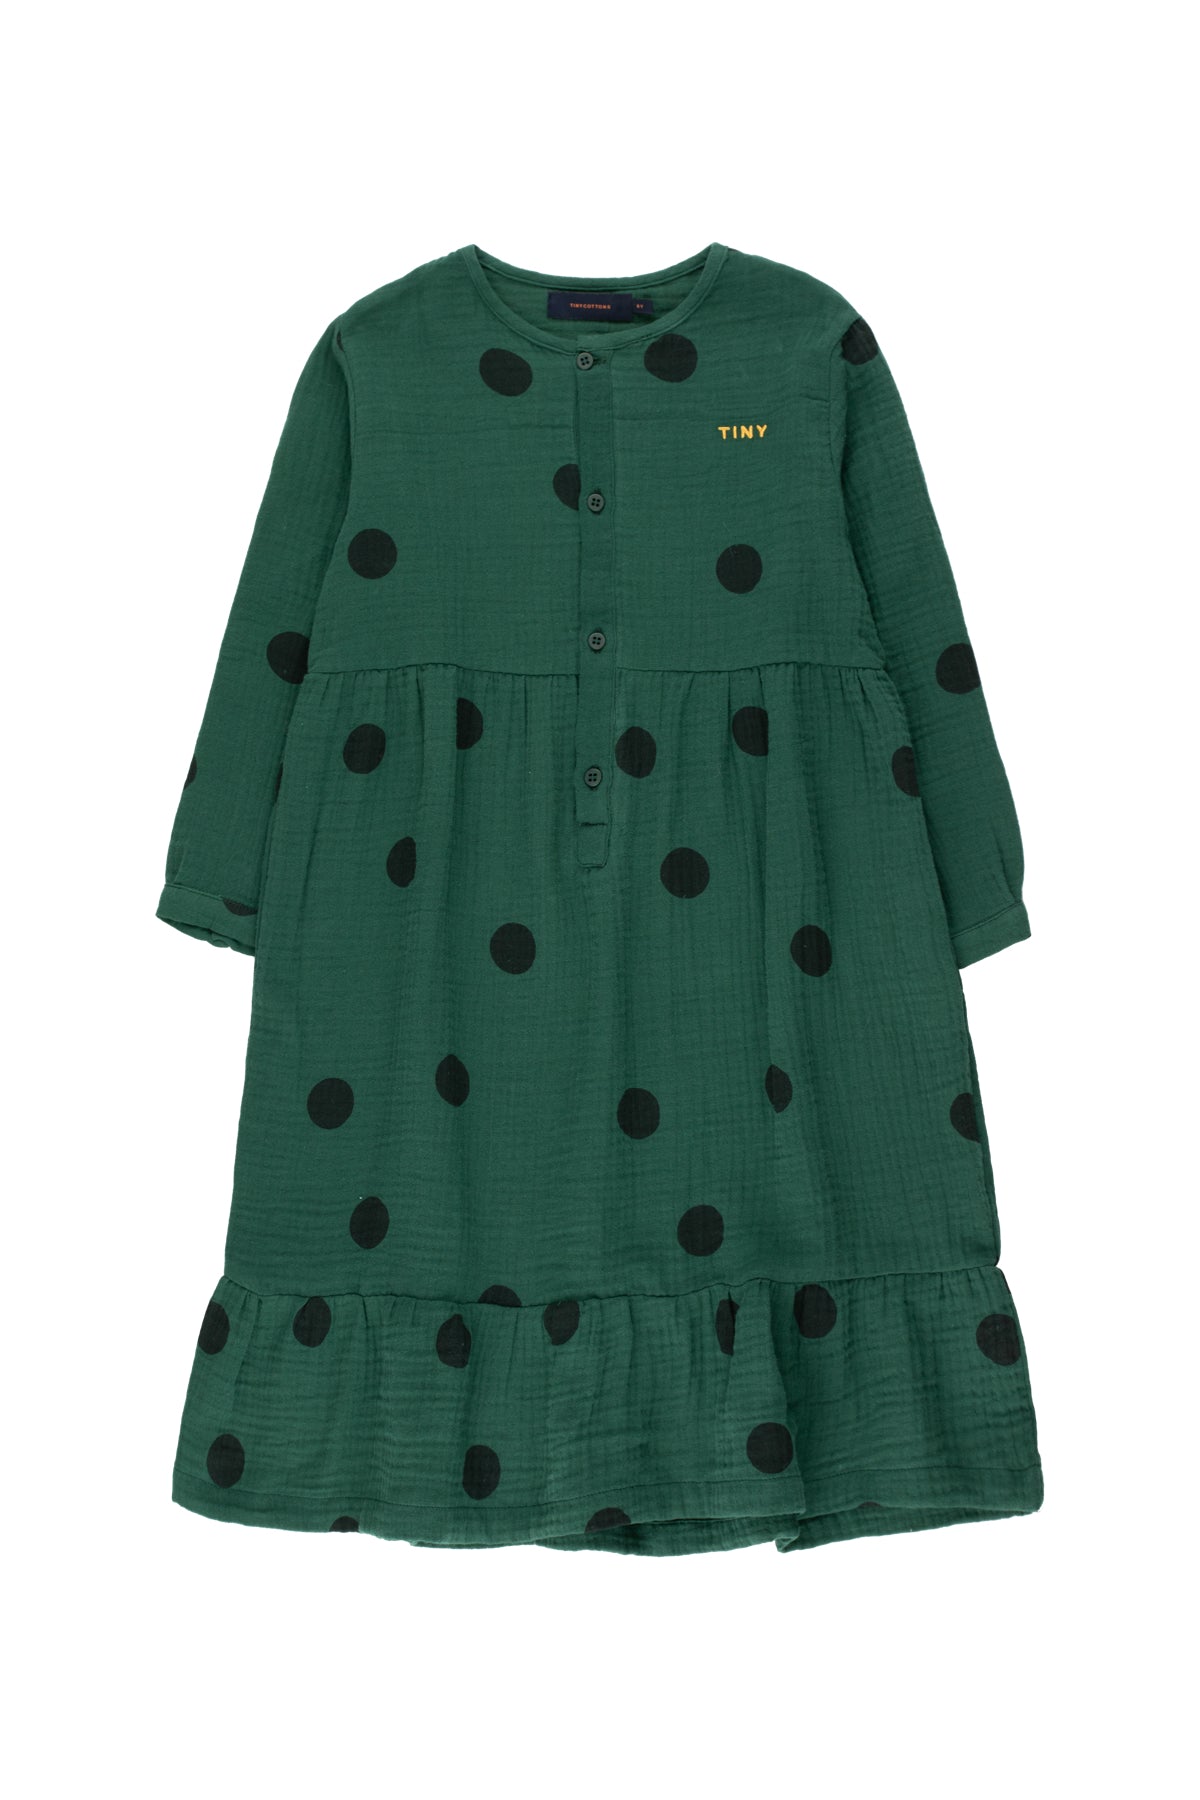 Girls Dark Green Dots Cotton Dress